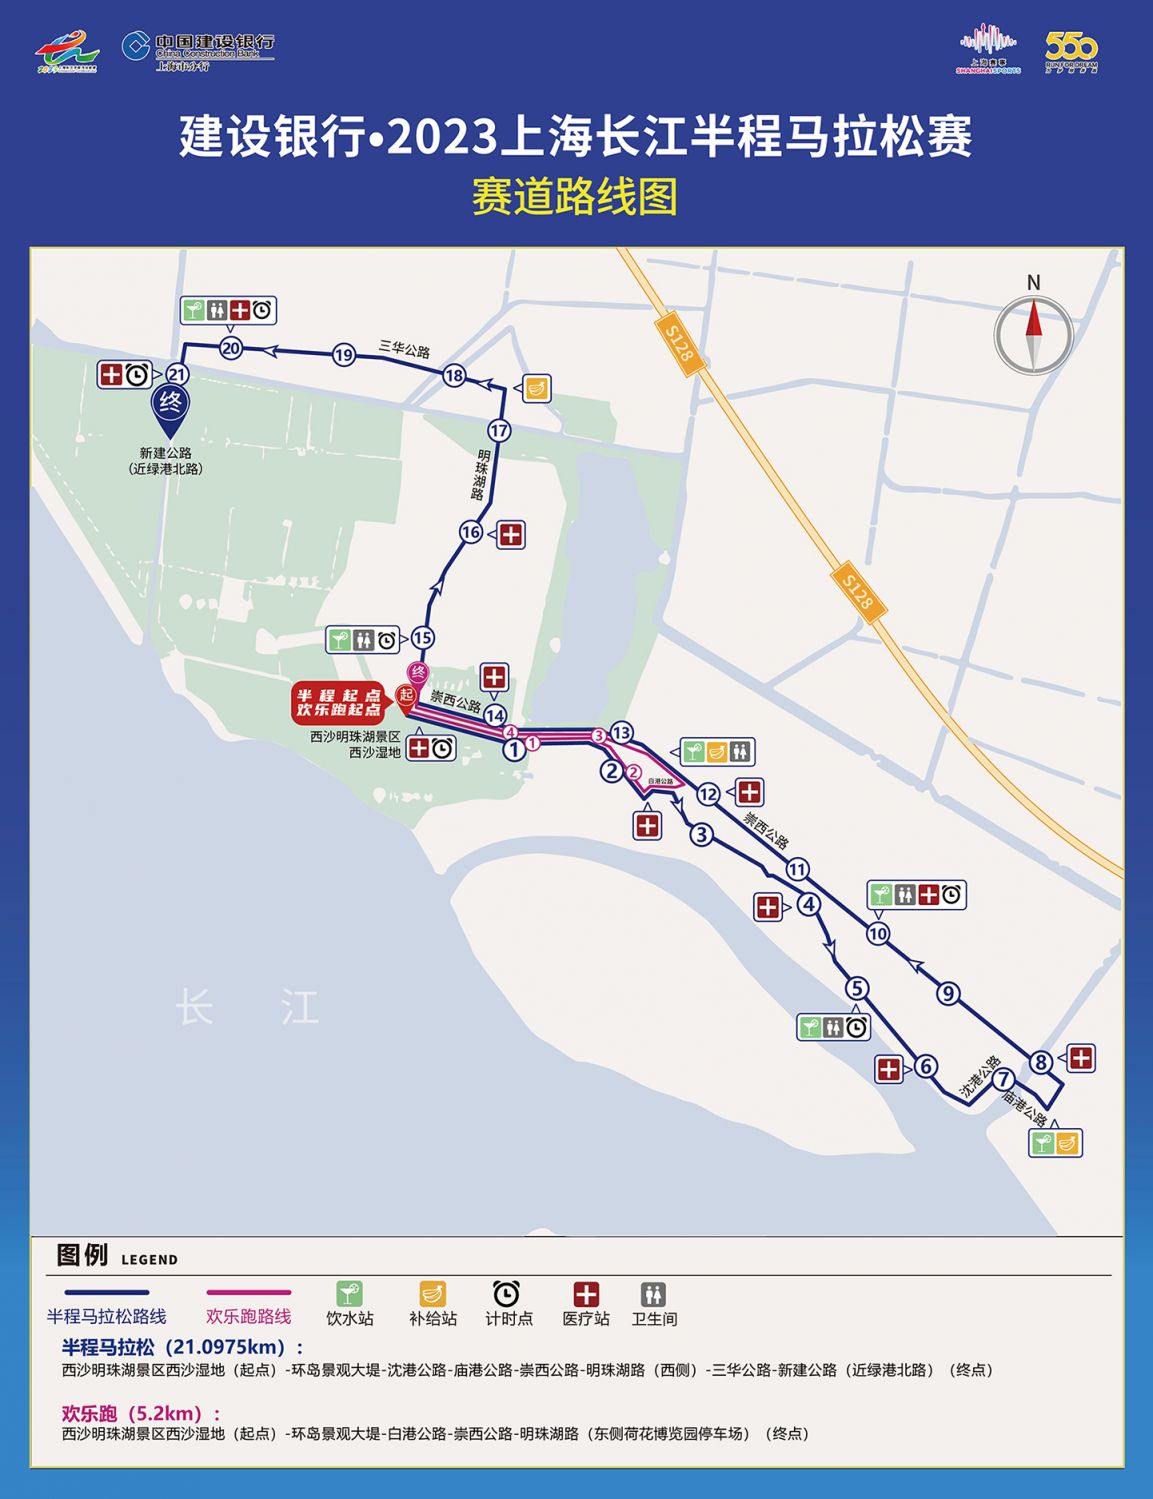 2023上海长江半马比赛时间 地点 路线图